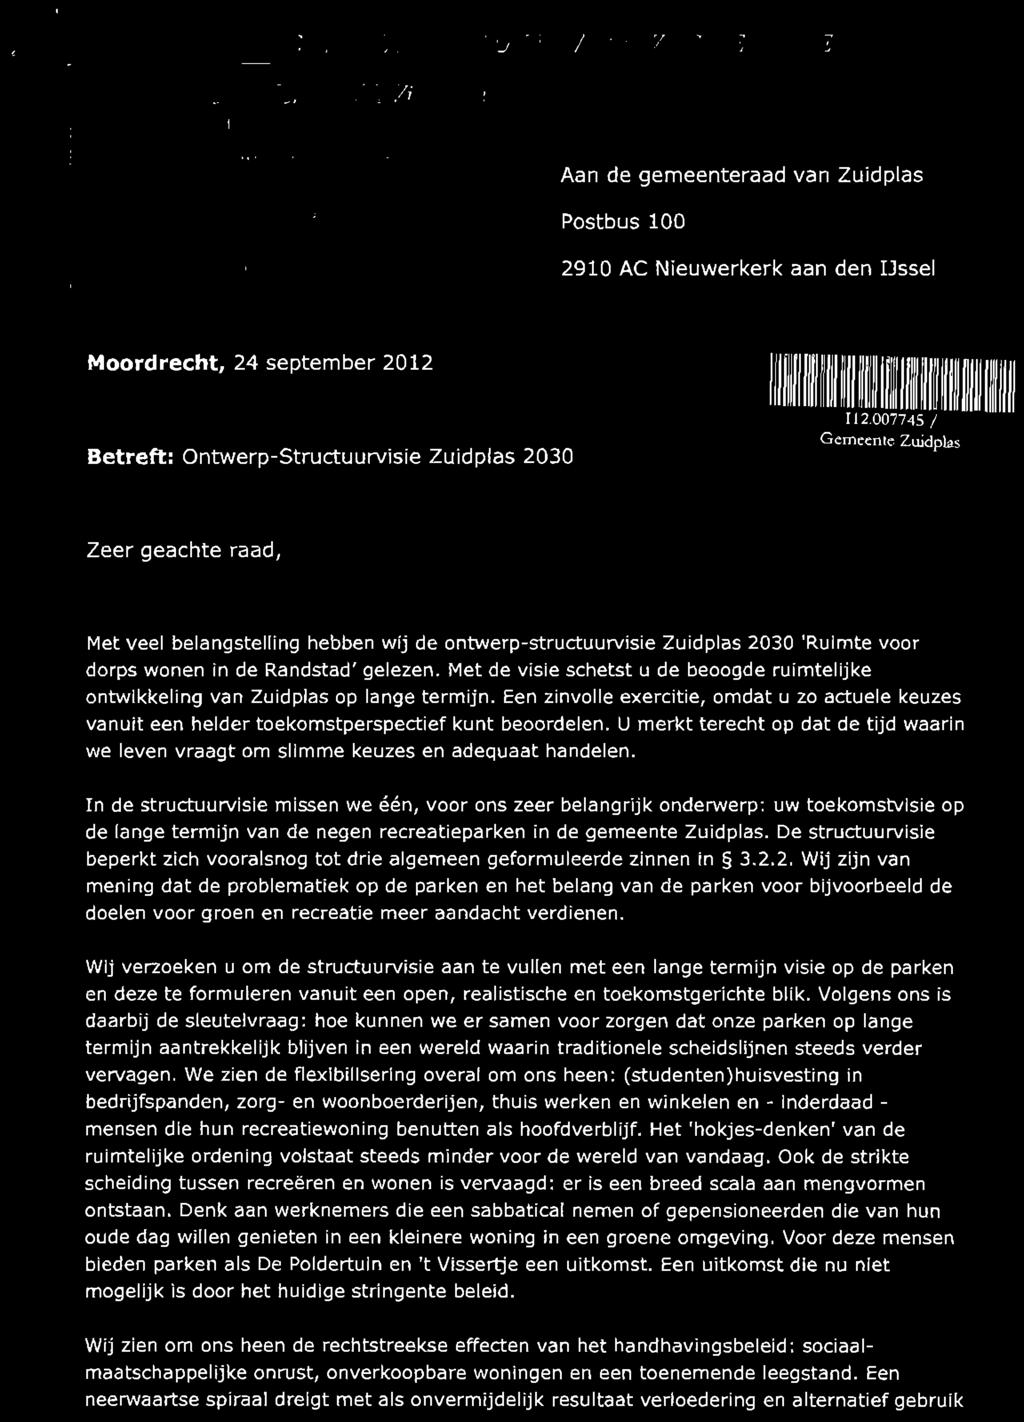 nl Aan de gemeenteraad van Zuidpias Postbus 100 2910 AC Nieuwerkerk aan den IJssel Moordrecht, 24 september 2012 Betreft: Ontwerp-Structuurvisie Zuidpias 2030 in iimiiitll 112.